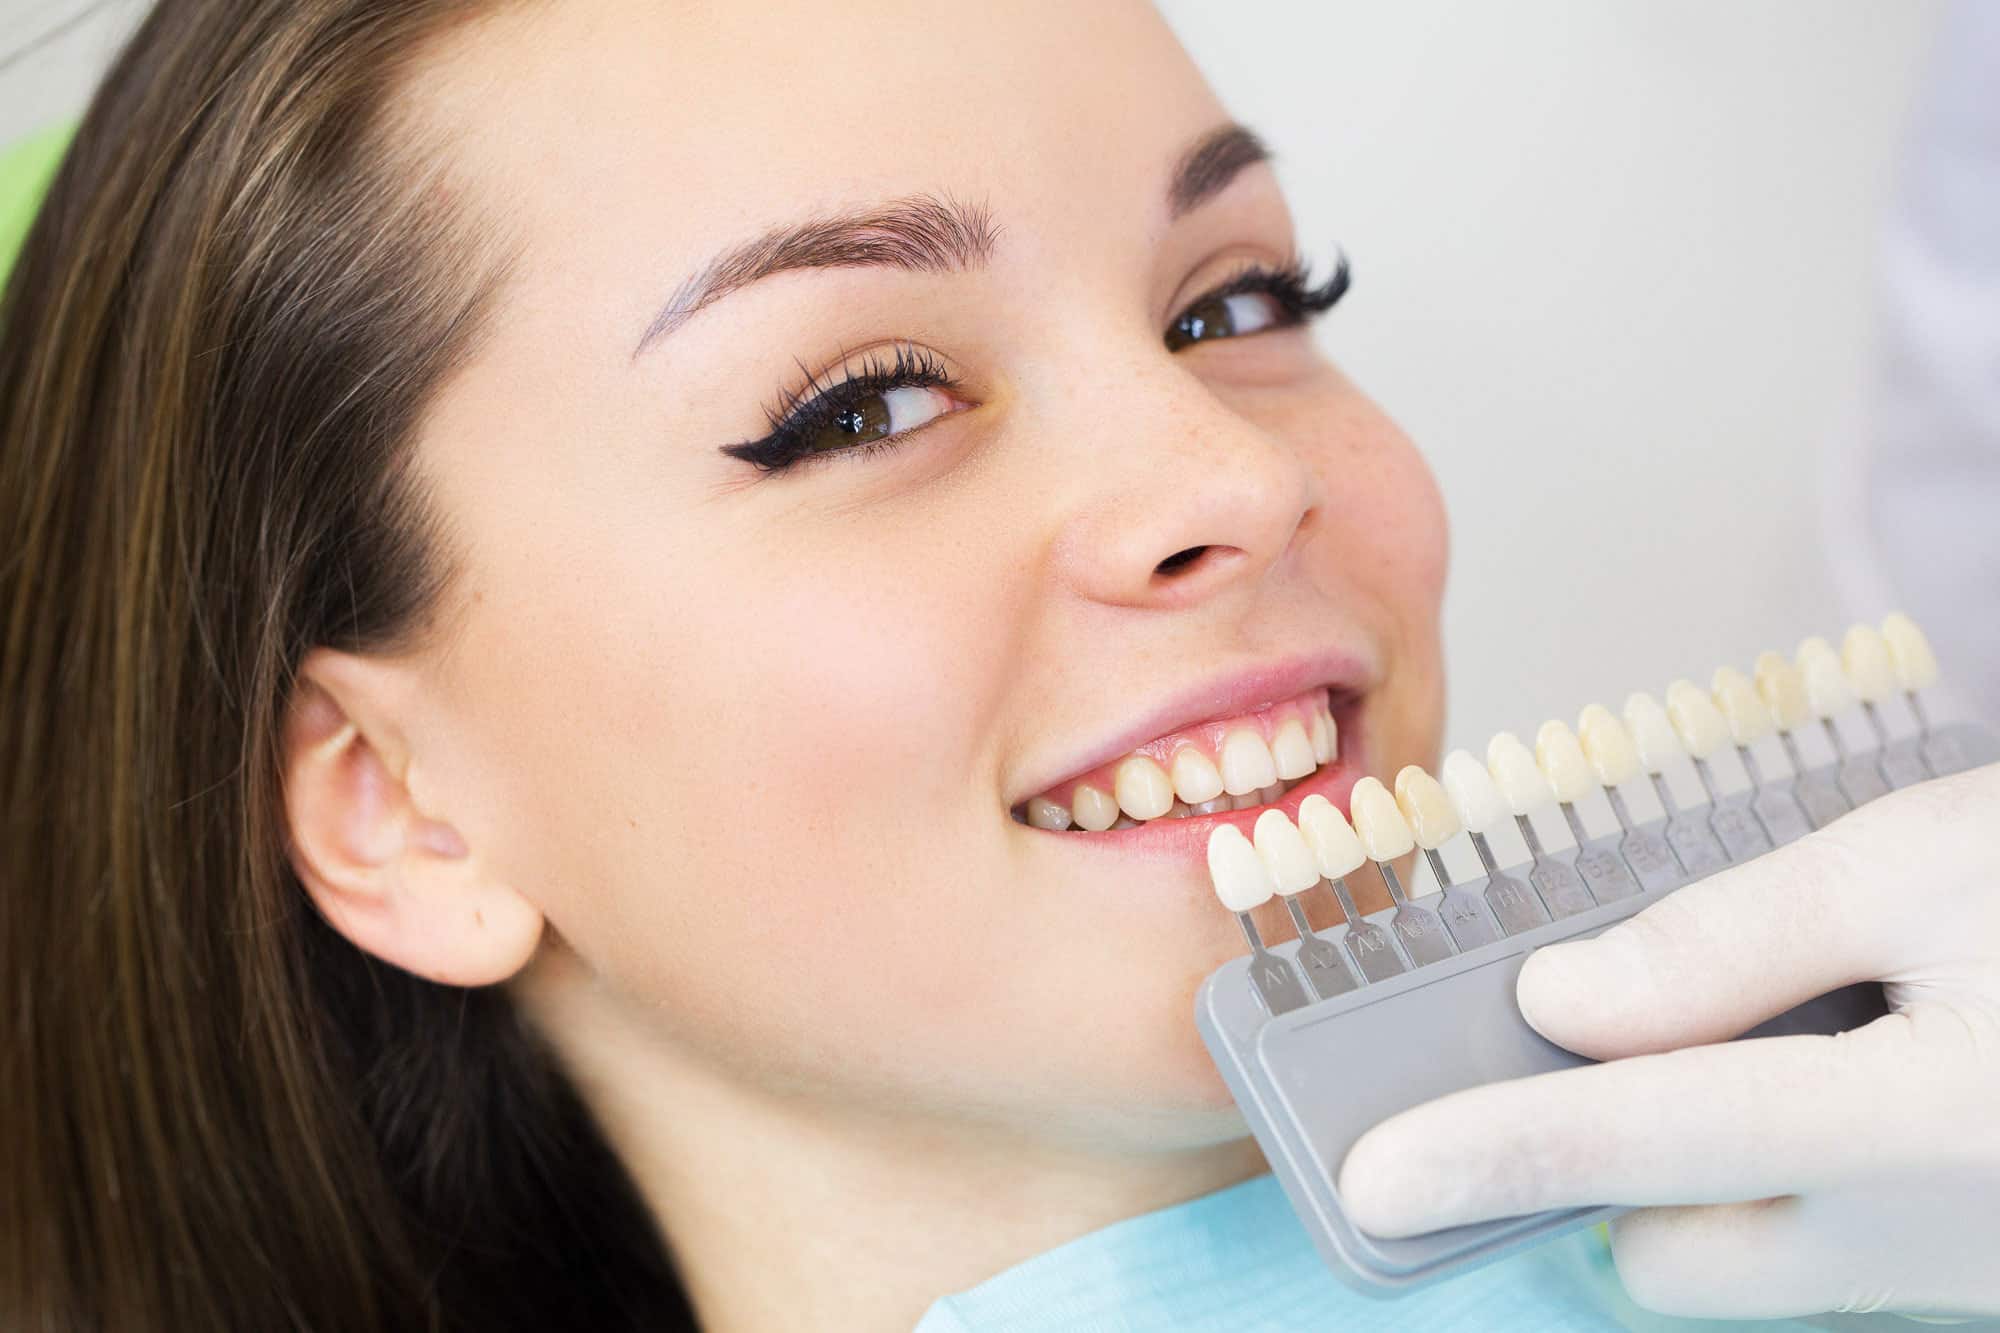 כל מה שאתה צריך לדעת על ציפוי שיניים